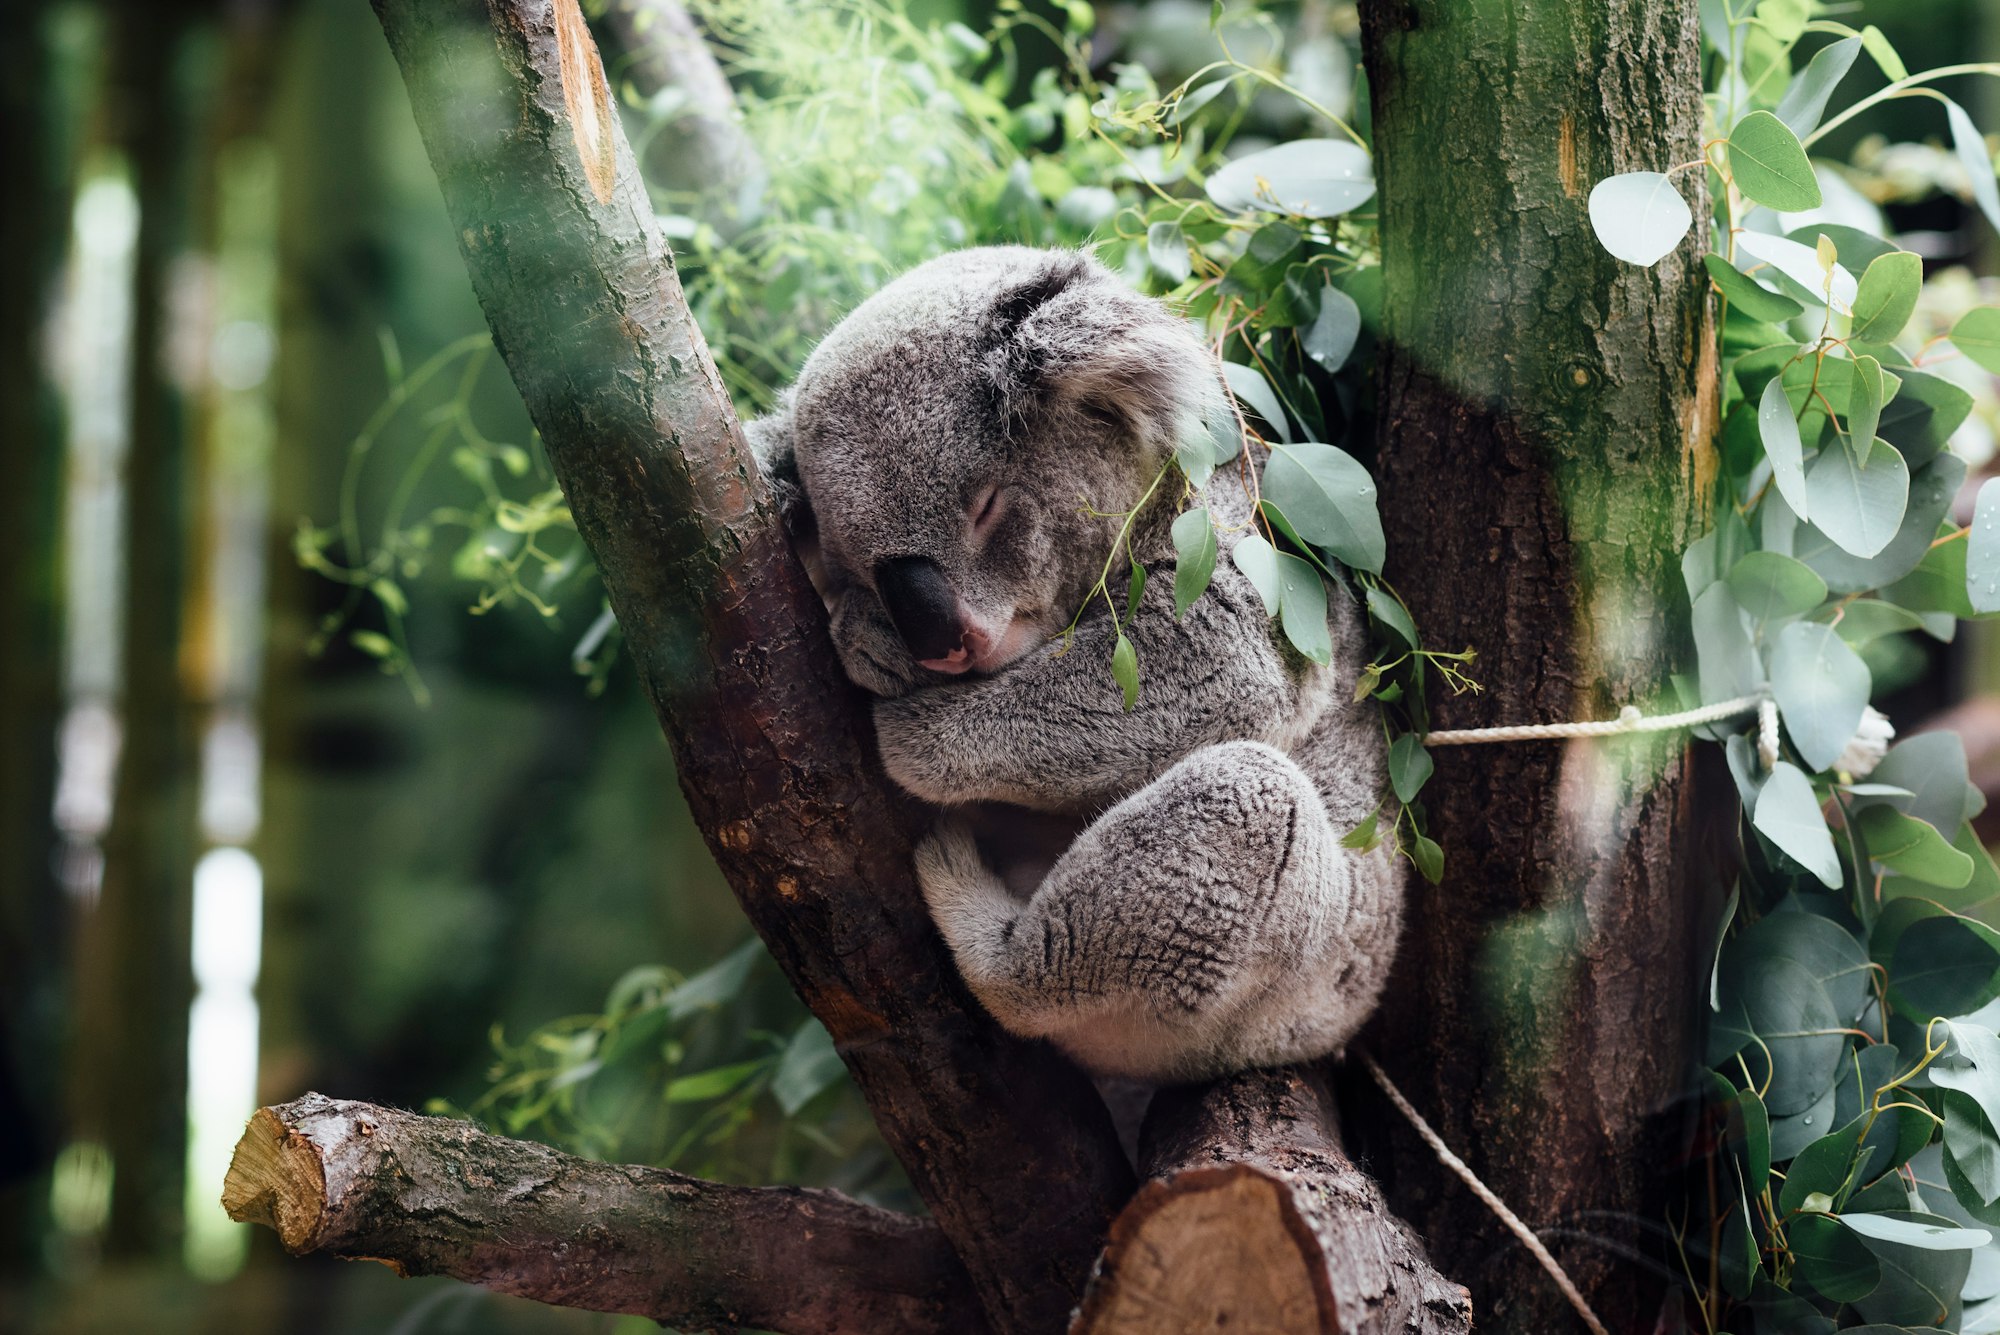 Napping koala